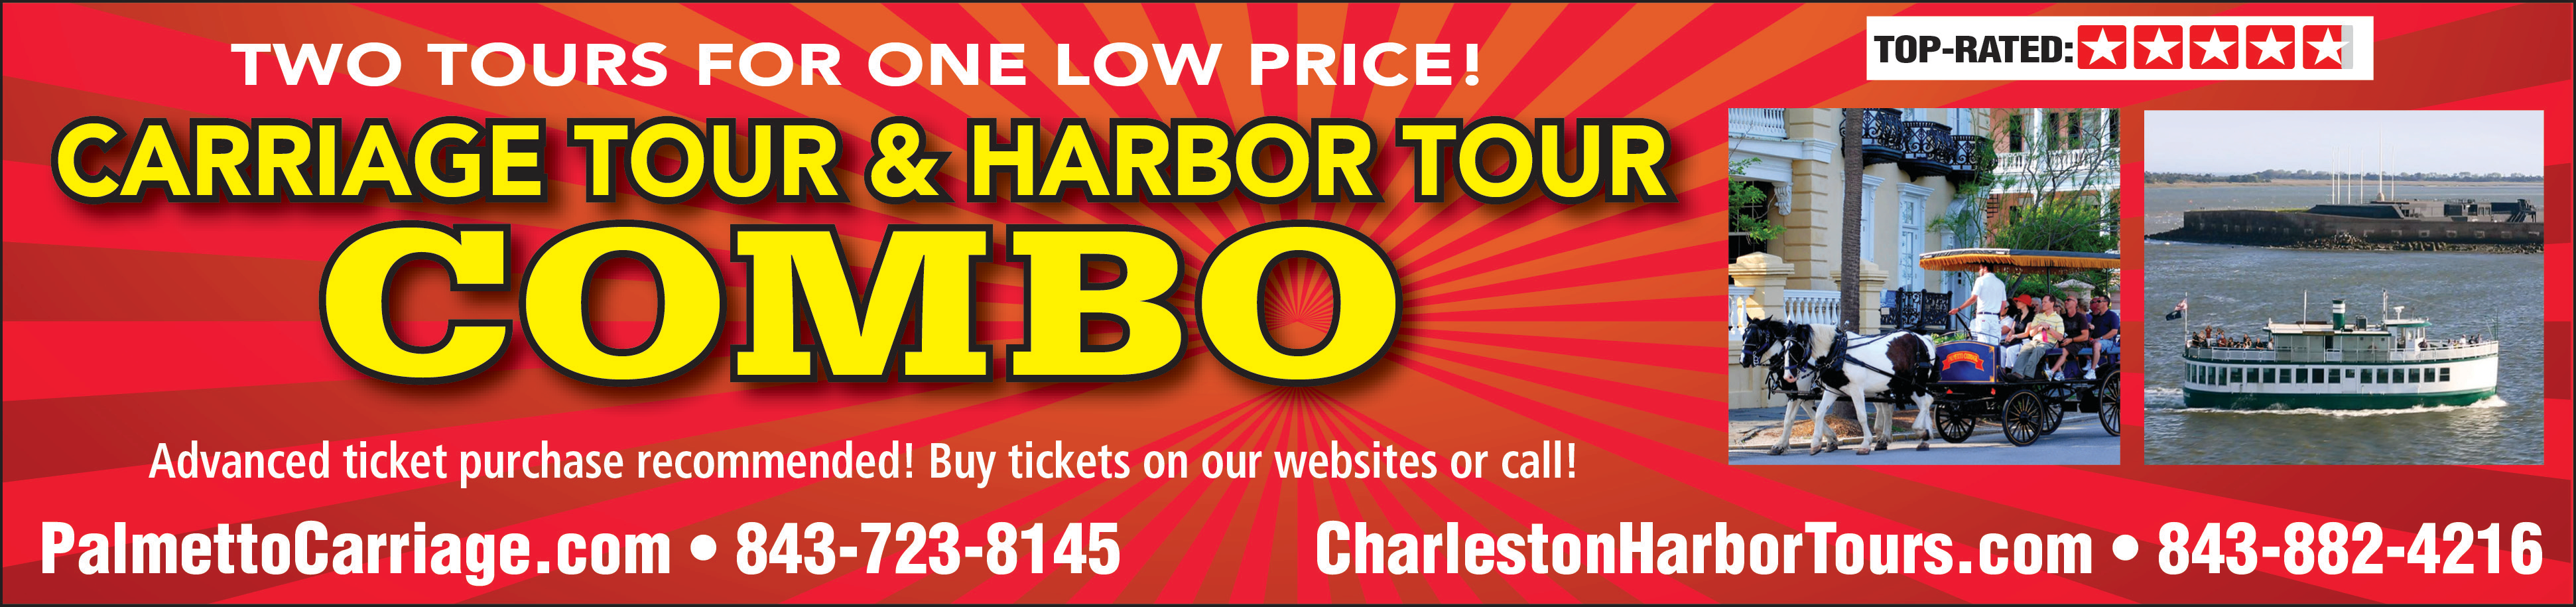 Charleston Harbor Tours & Carriage Tour Print Ad